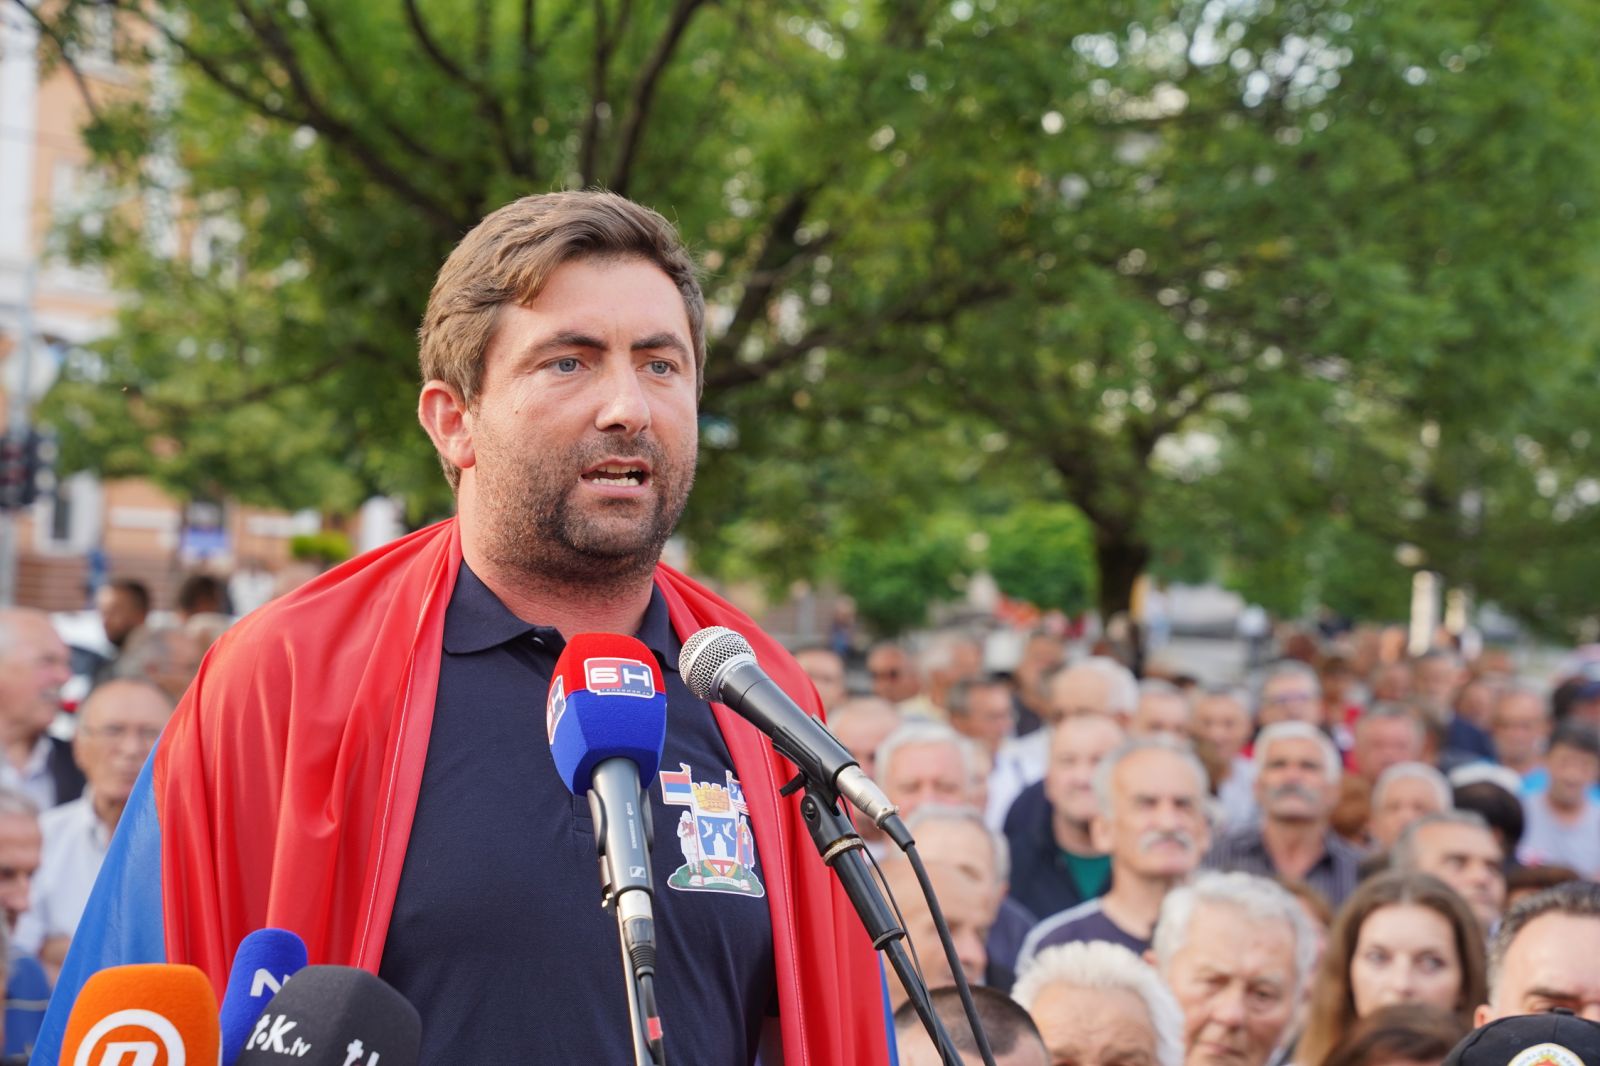 NIJE PROBLEM SAMO BANJALUKA Opozicija „zapela“ i oko podrške Petroviću, on se svađa sa građanima